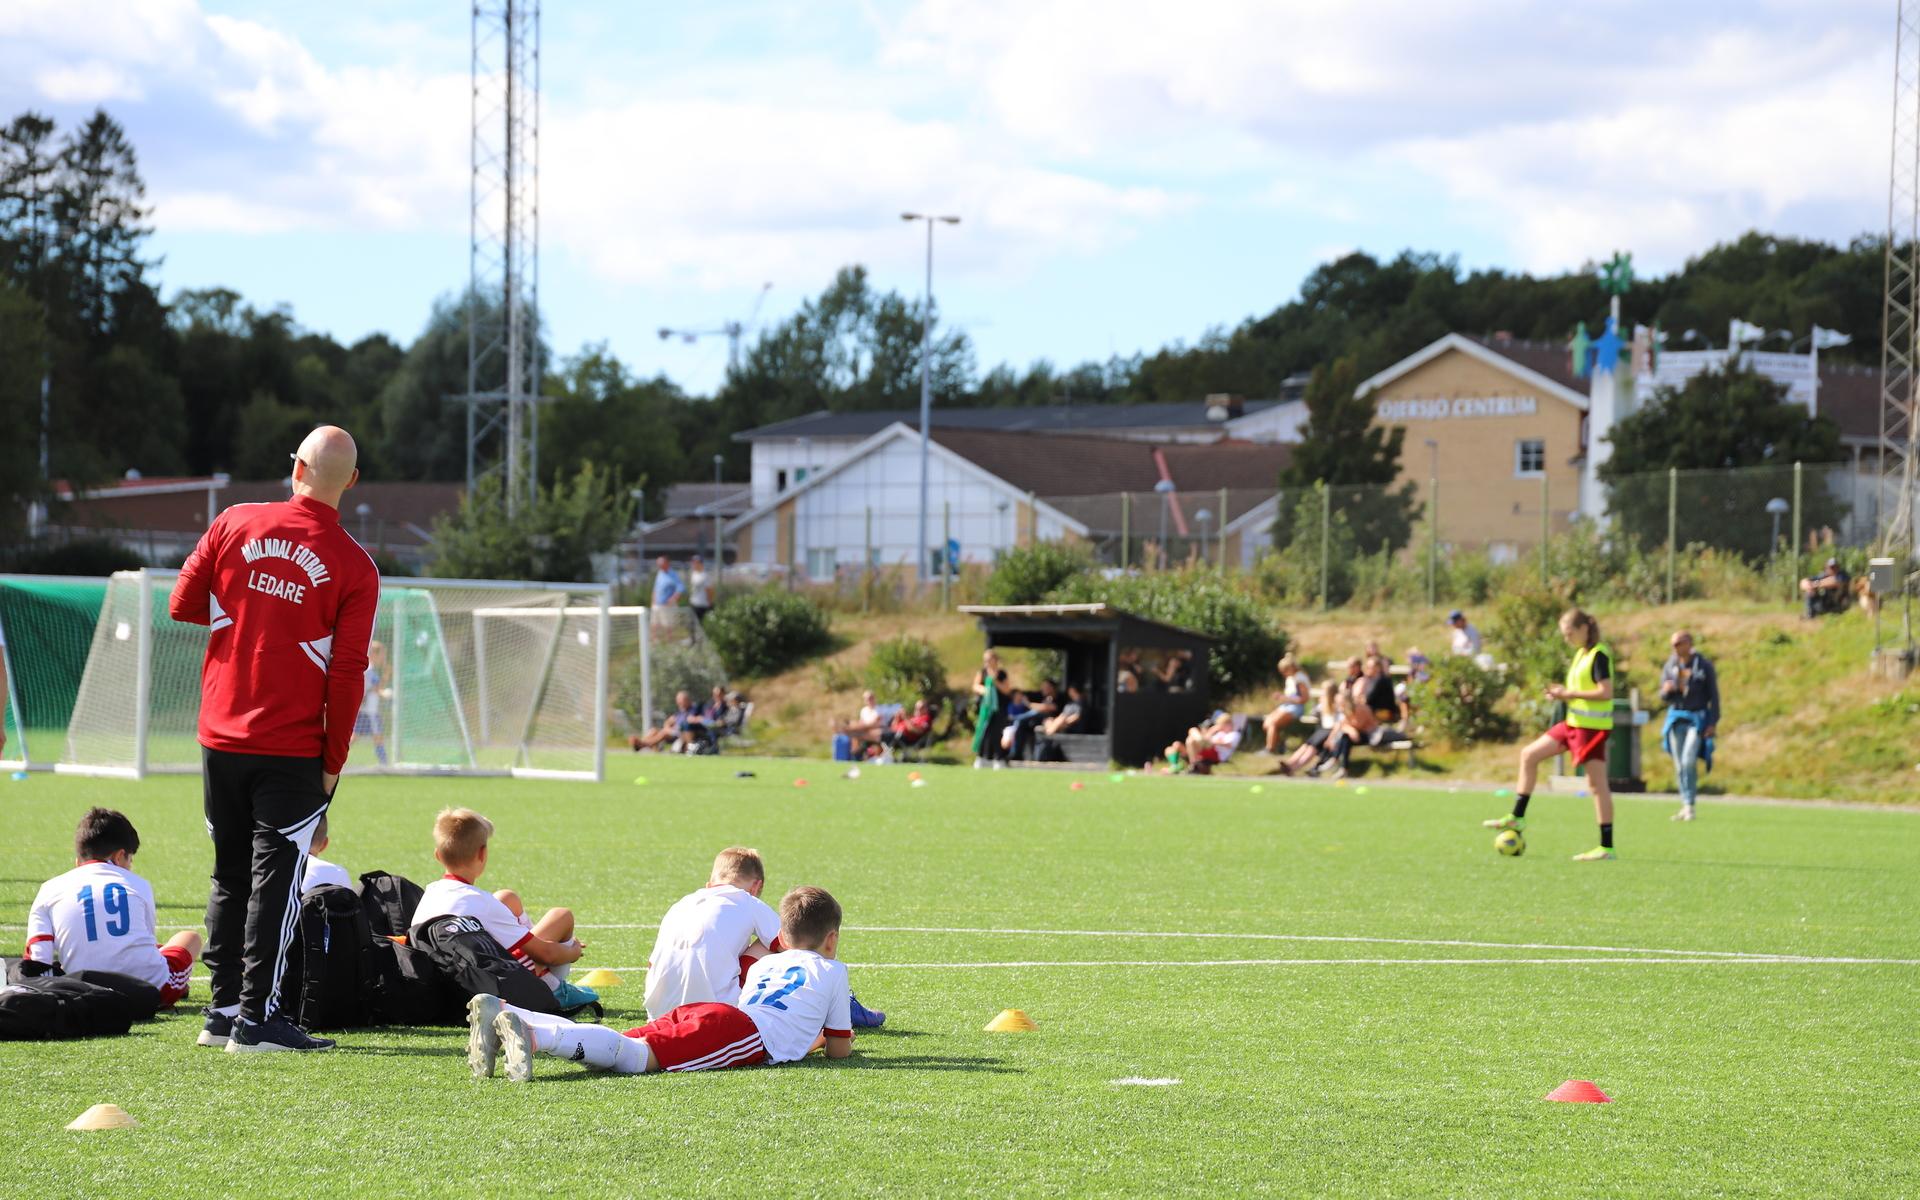 Lag från både Mölndal och Landvetter spelade mot Öjersjö IF:s hemmalag i åldrarna 10-11 år. 